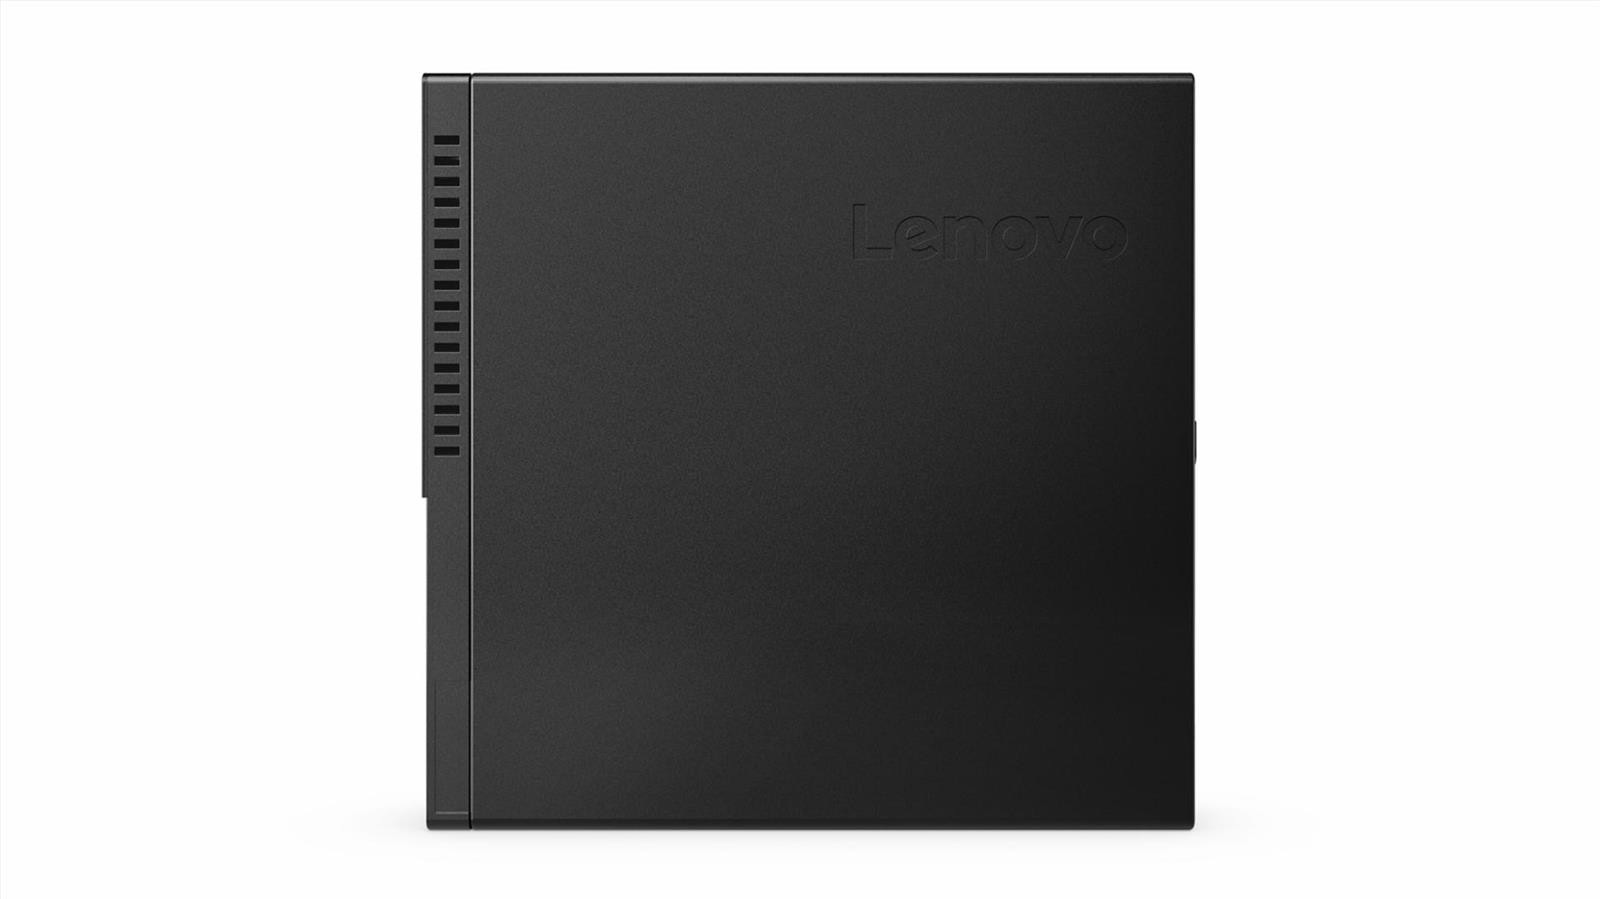 Lenovo ThinkCentre M710q Tiny Mini-PC Intel i5-7400T 8GB RAM 256GB SSD WLAN Win 10 Pro